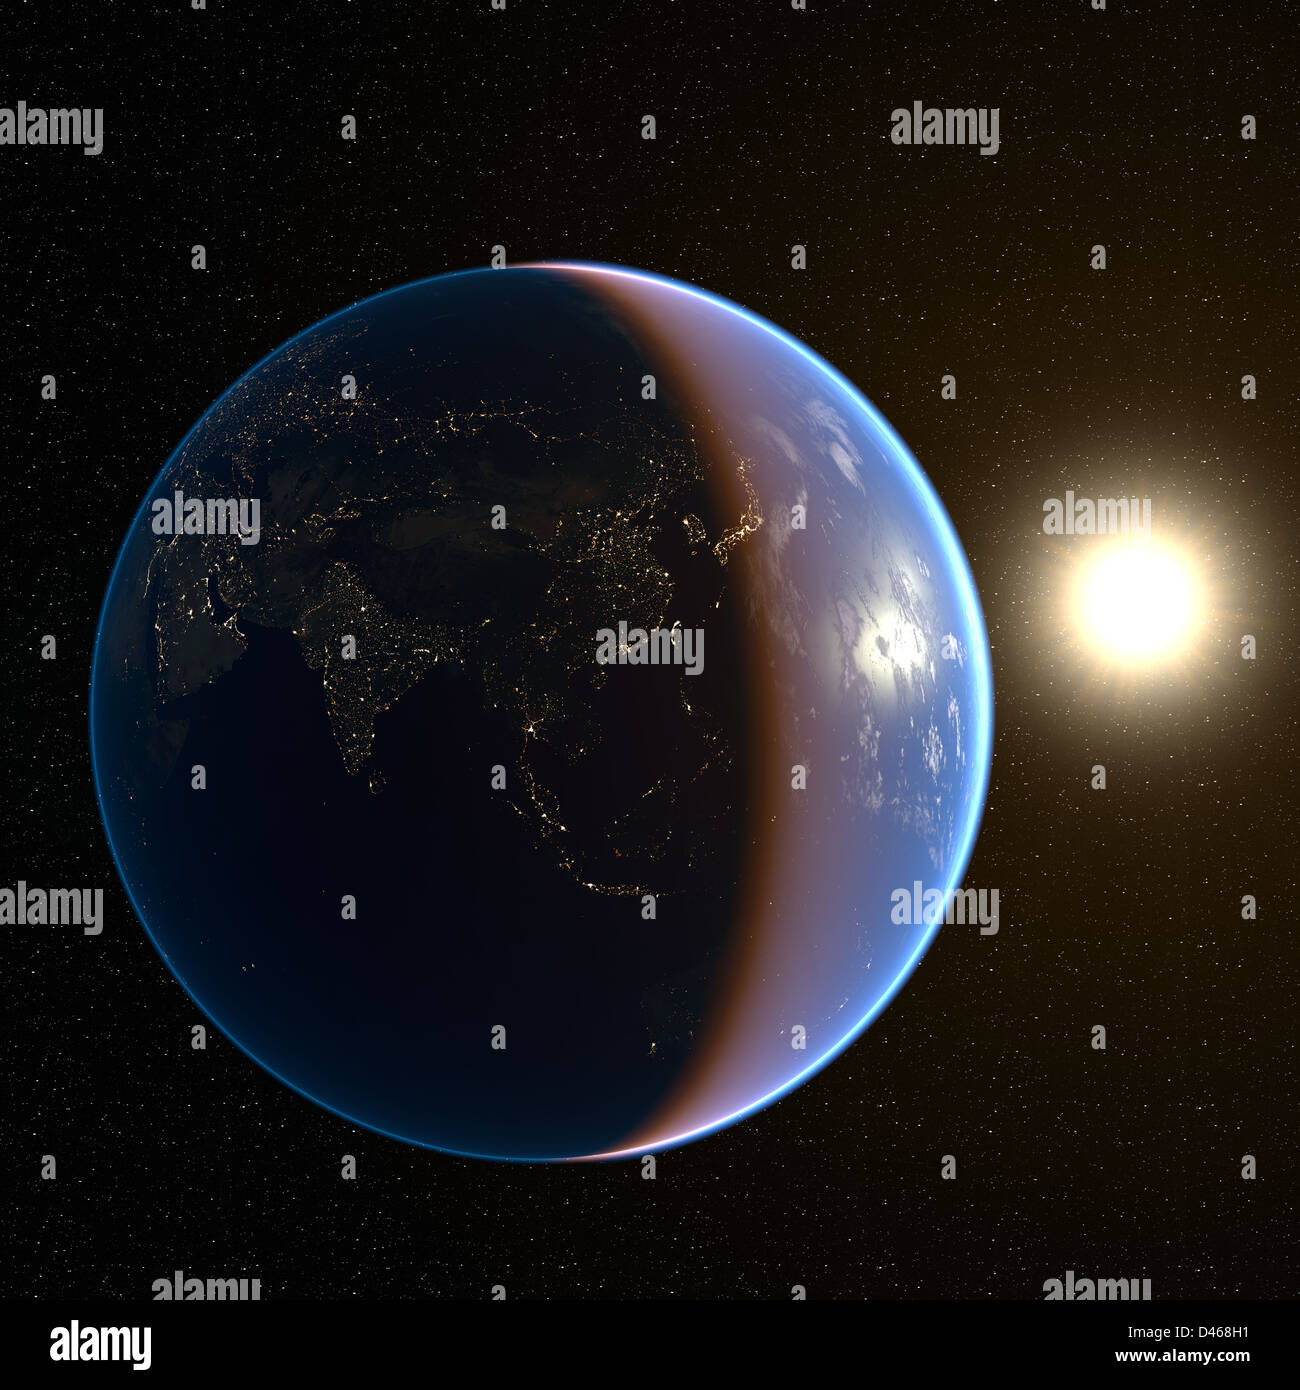 Dunkle Seite der Erde, nur durch die hellen Lichter von Asien beleuchtet. Earth Karten mit freundlicher Genehmigung von NASA: http://visibleearth.nasa.gov/ Stockfoto